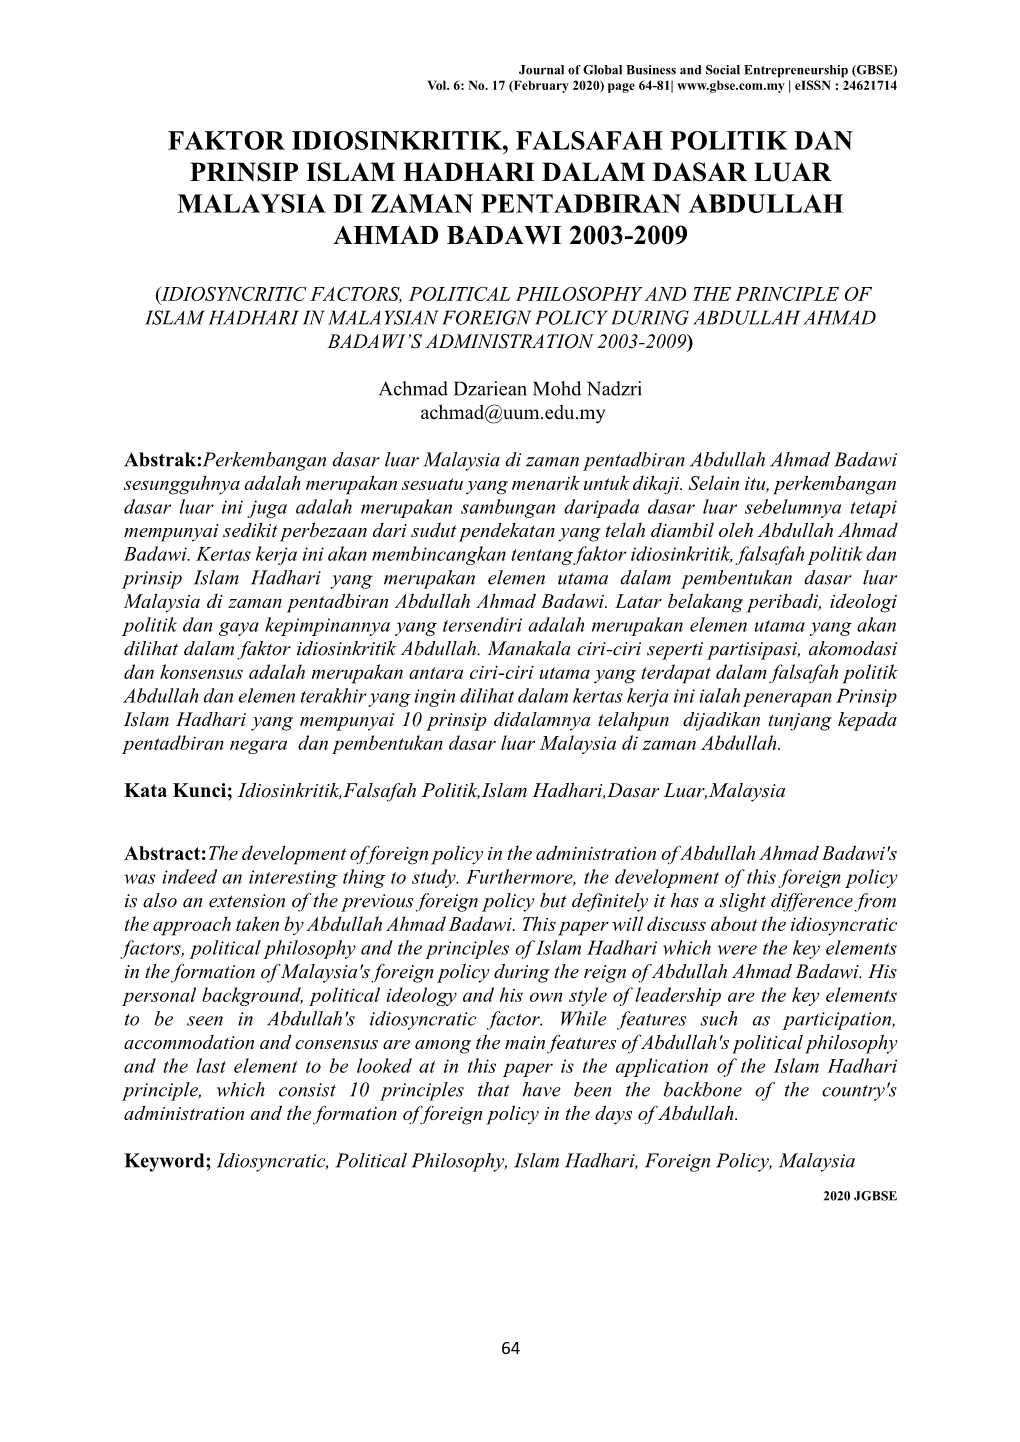 Faktor Idiosinkritik, Falsafah Politik Dan Prinsip Islam Hadhari Dalam Dasar Luar Malaysia Di Zaman Pentadbiran Abdullah Ahmad Badawi 2003-2009